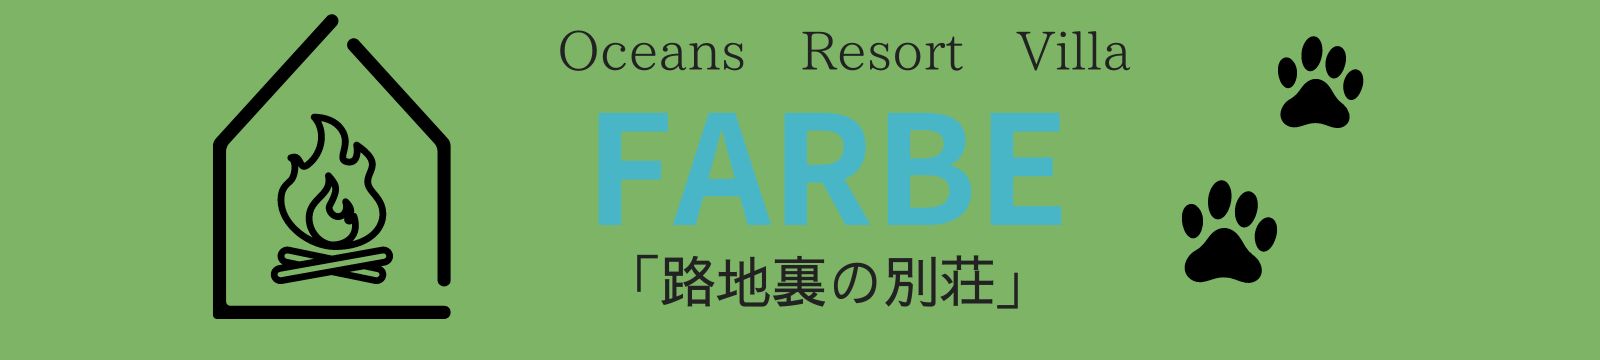 【公式】Oceans Resort Villa-FARBE 路地裏の別荘